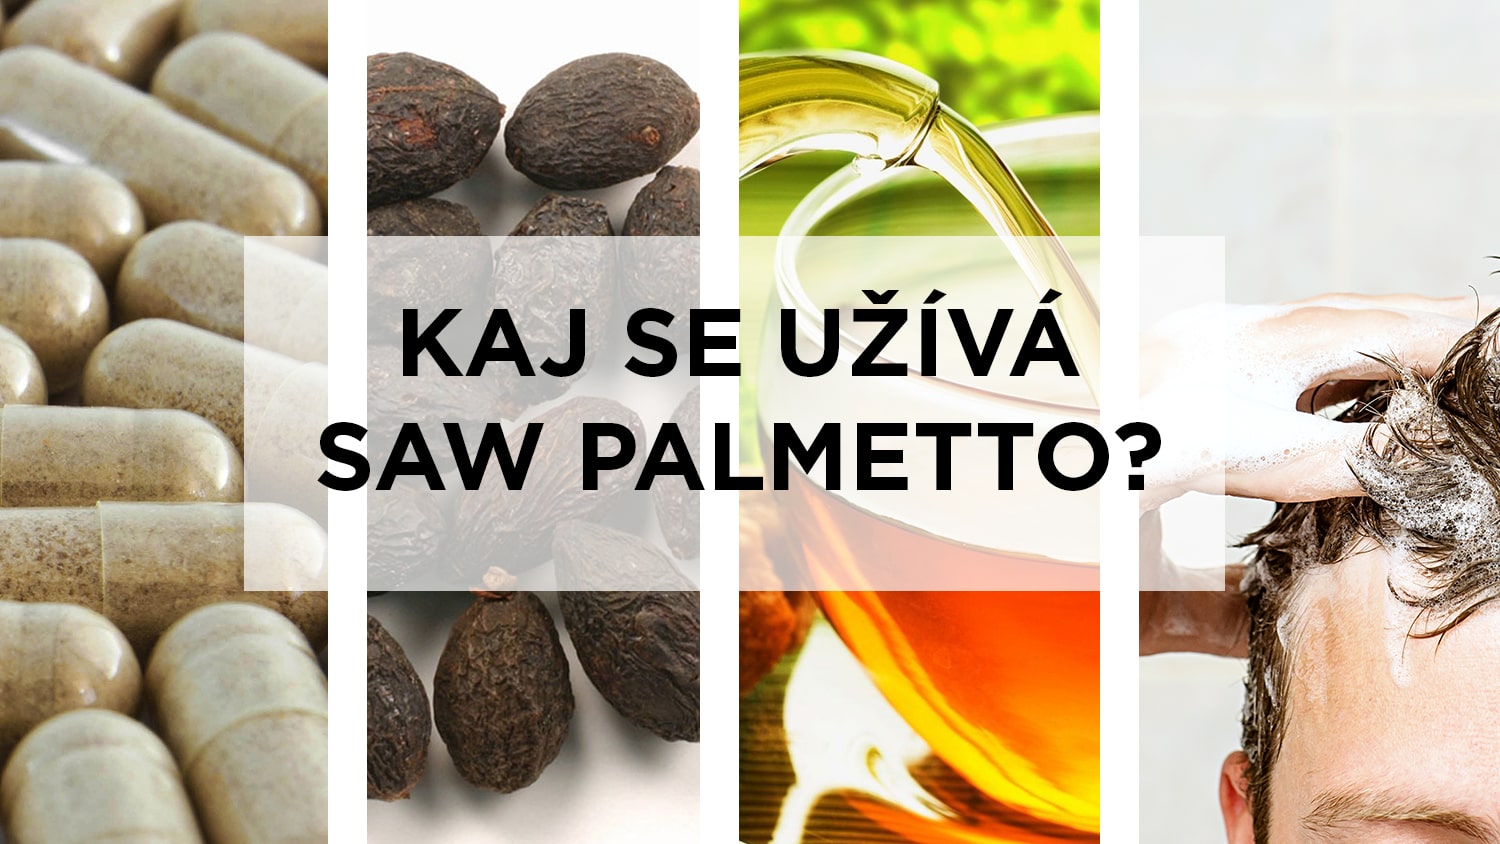 Způsoby užívání saw palmetta - kapsle, pilulky, sušené plody, čaj, šampon